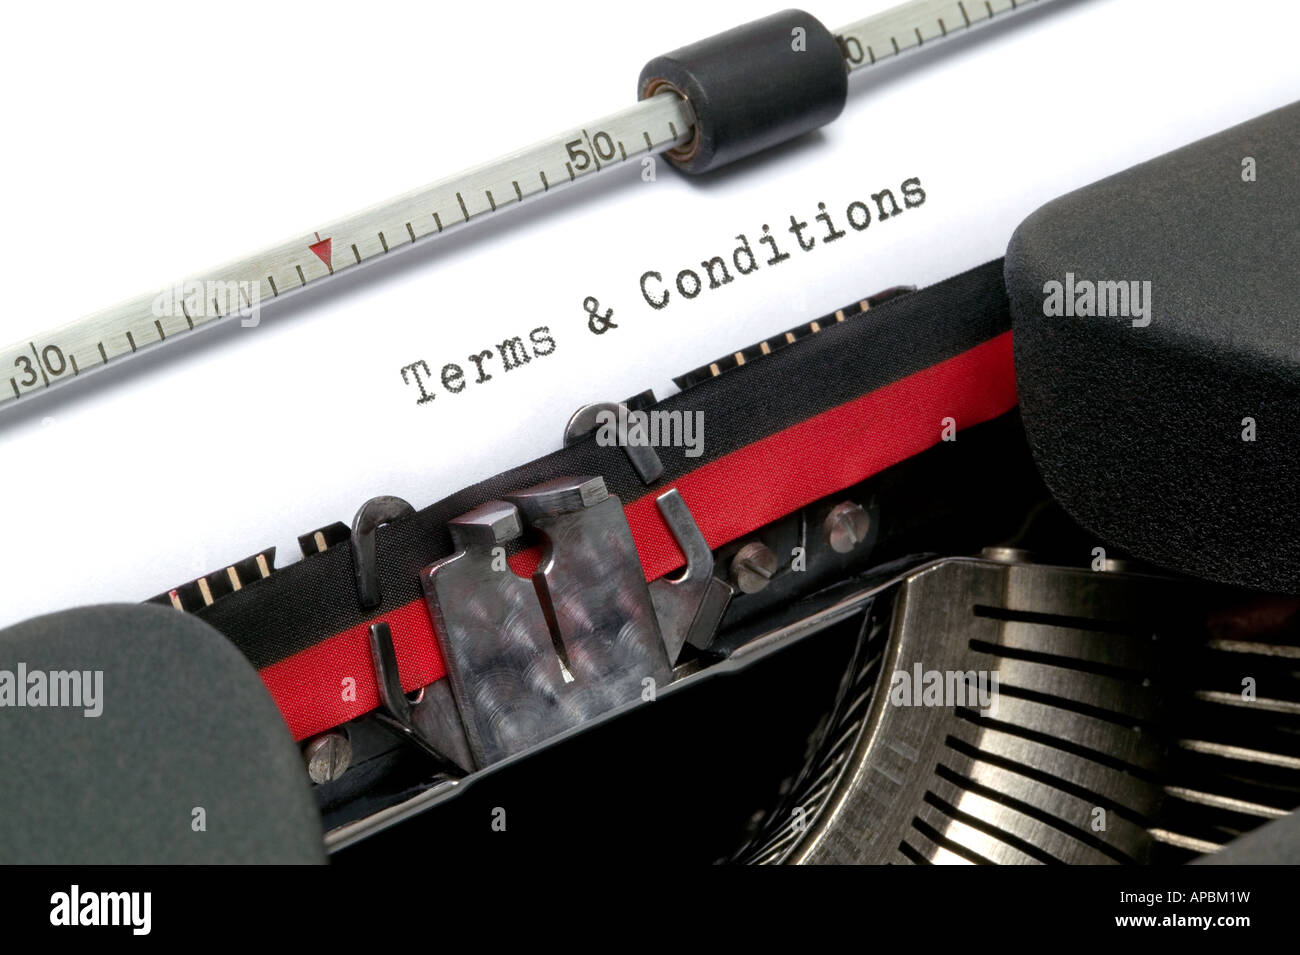 Allgemeinen Geschäftsbedingungen, die auf einer alten Schreibmaschine getippt Stockfoto